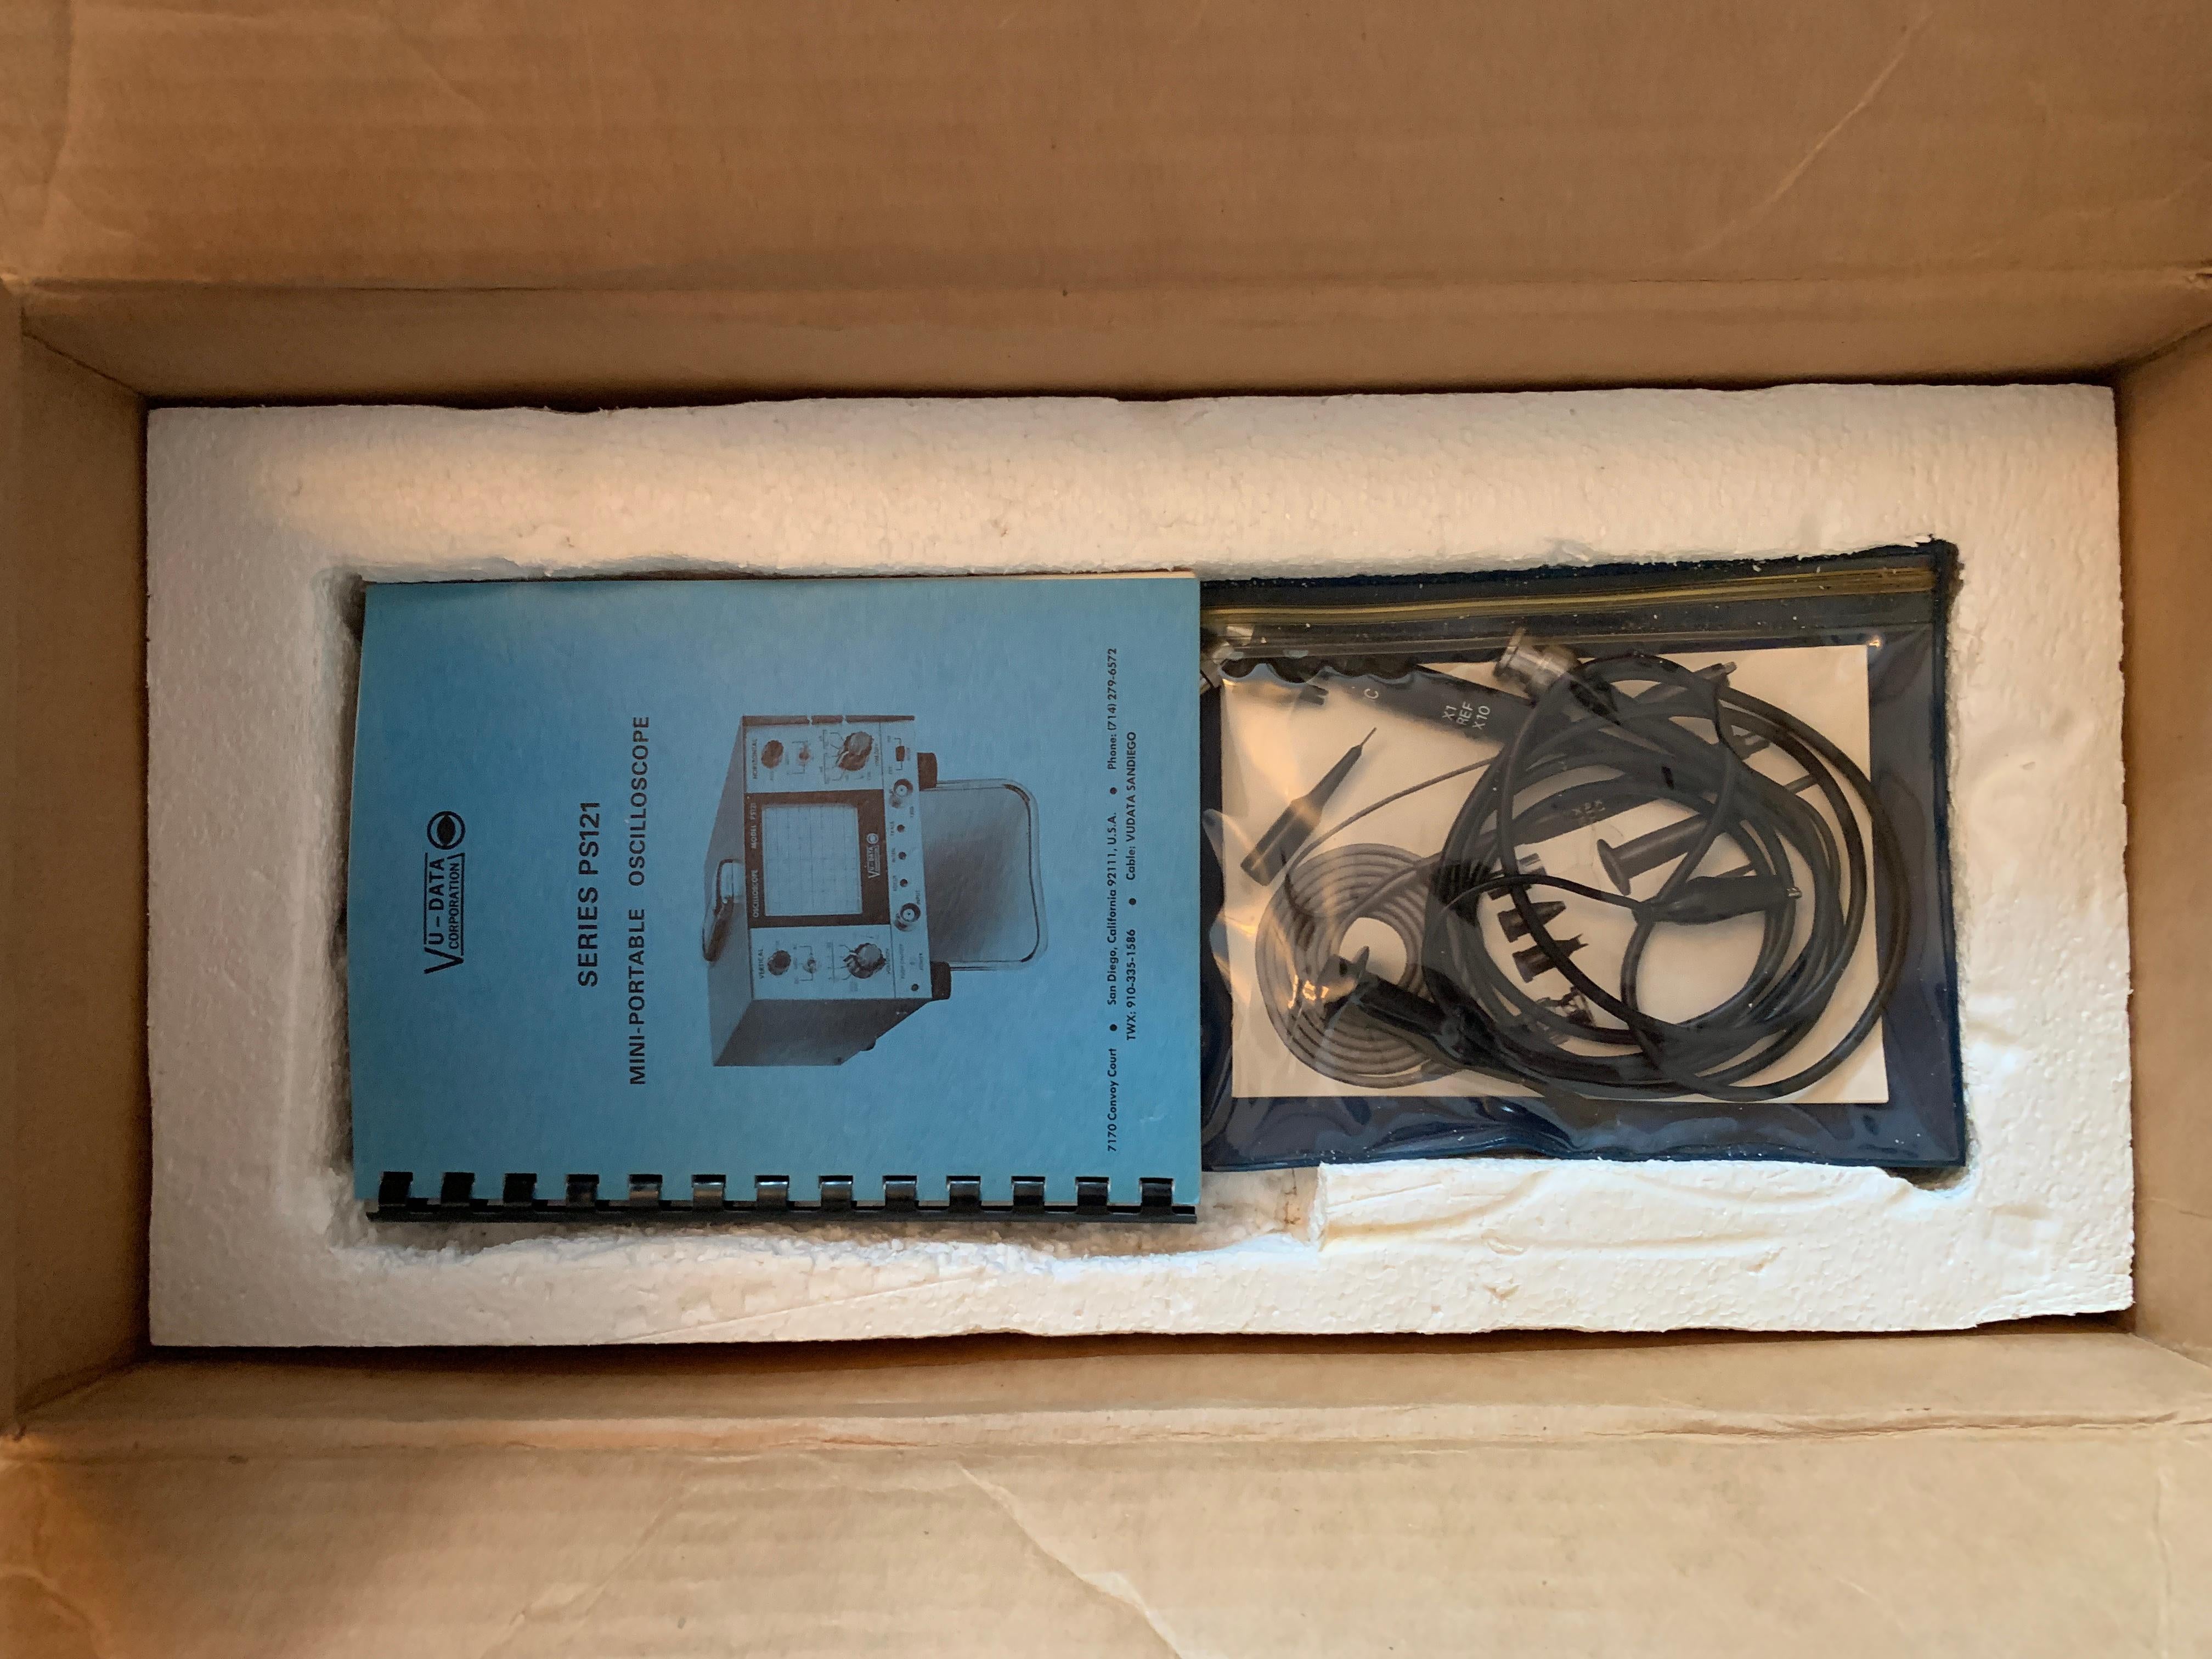 American VU DATA Corporation Series PS121 Mini-Portable Oscilloscope For Sale